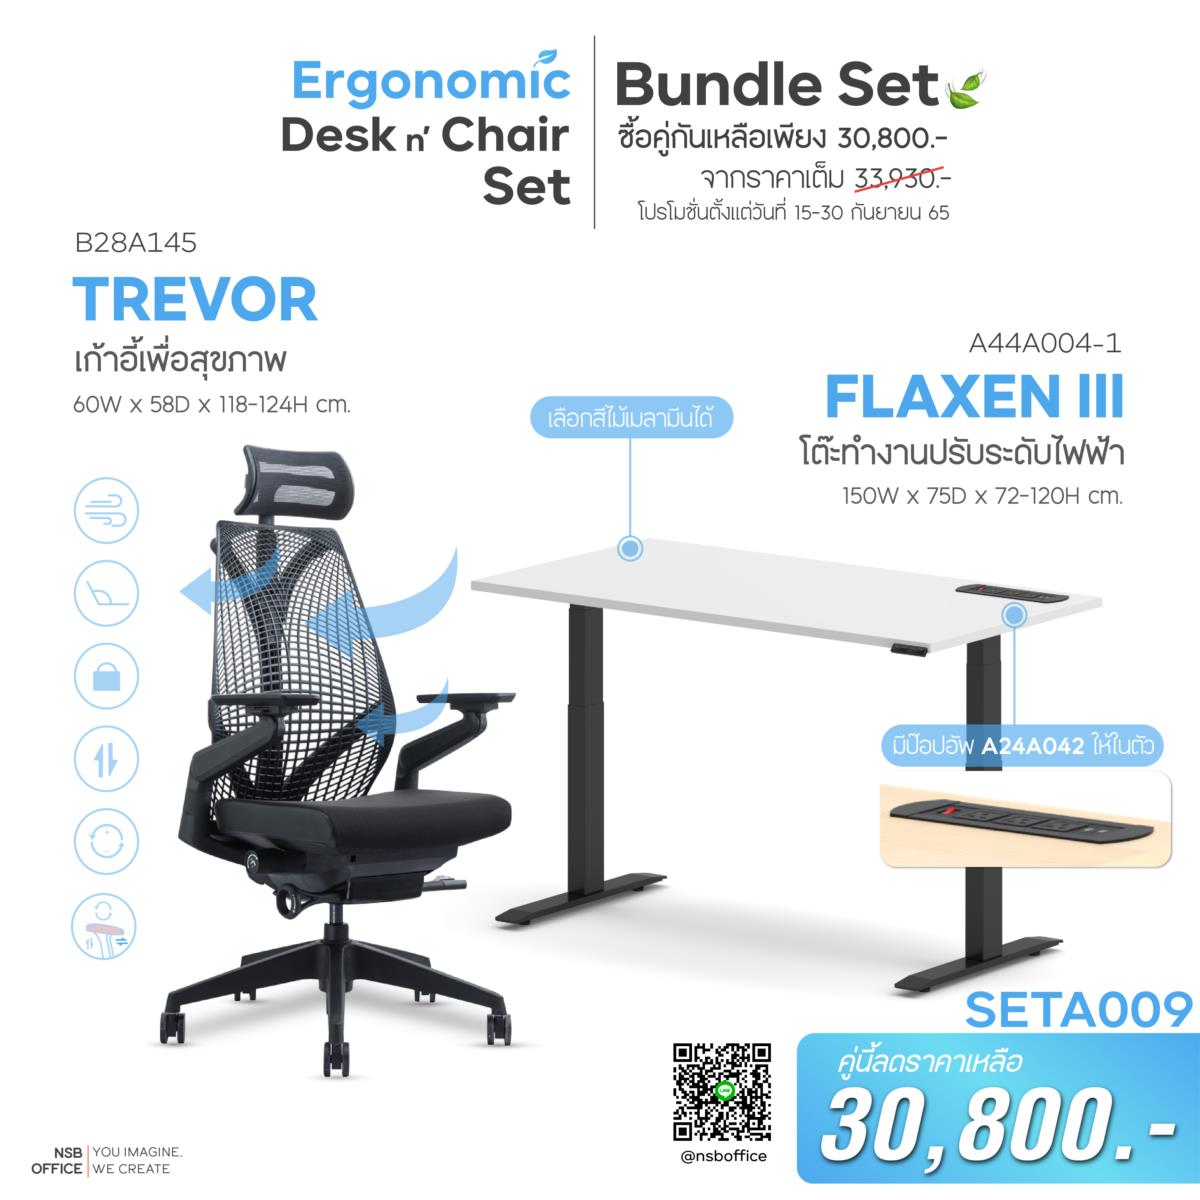 SETA009:ชุดโต๊ะทำงานปรับระดับพร้อมเก้าอี้เพื่อสุขภาพ   (Ergonomic Desk n